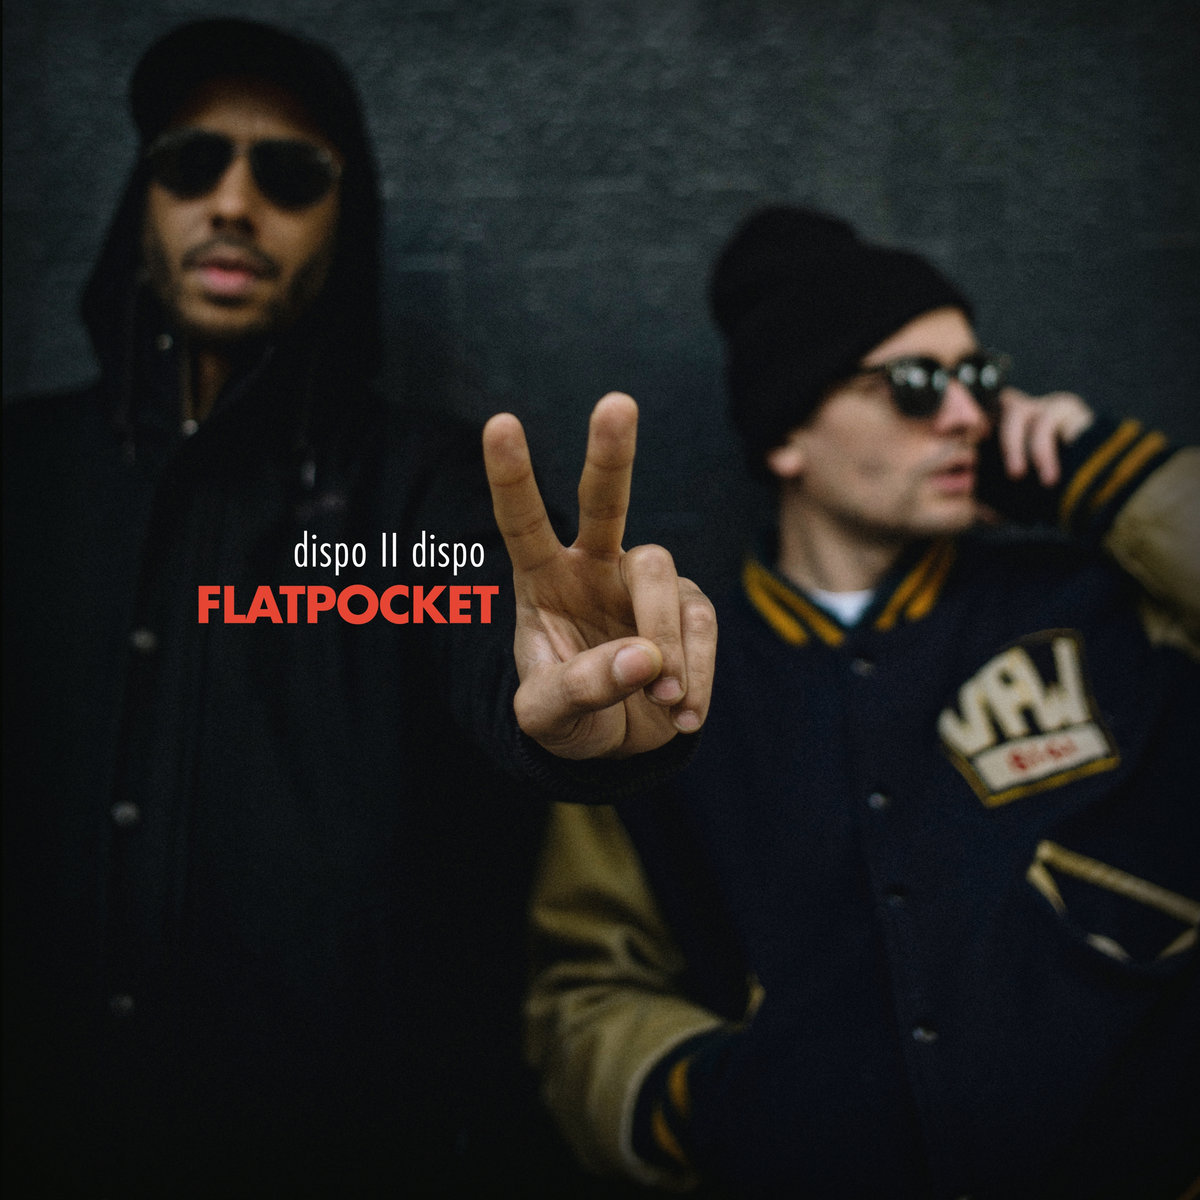 Listen: Flatpocket (Twit One & Lazy Jones) – Dispo II Dispo LP